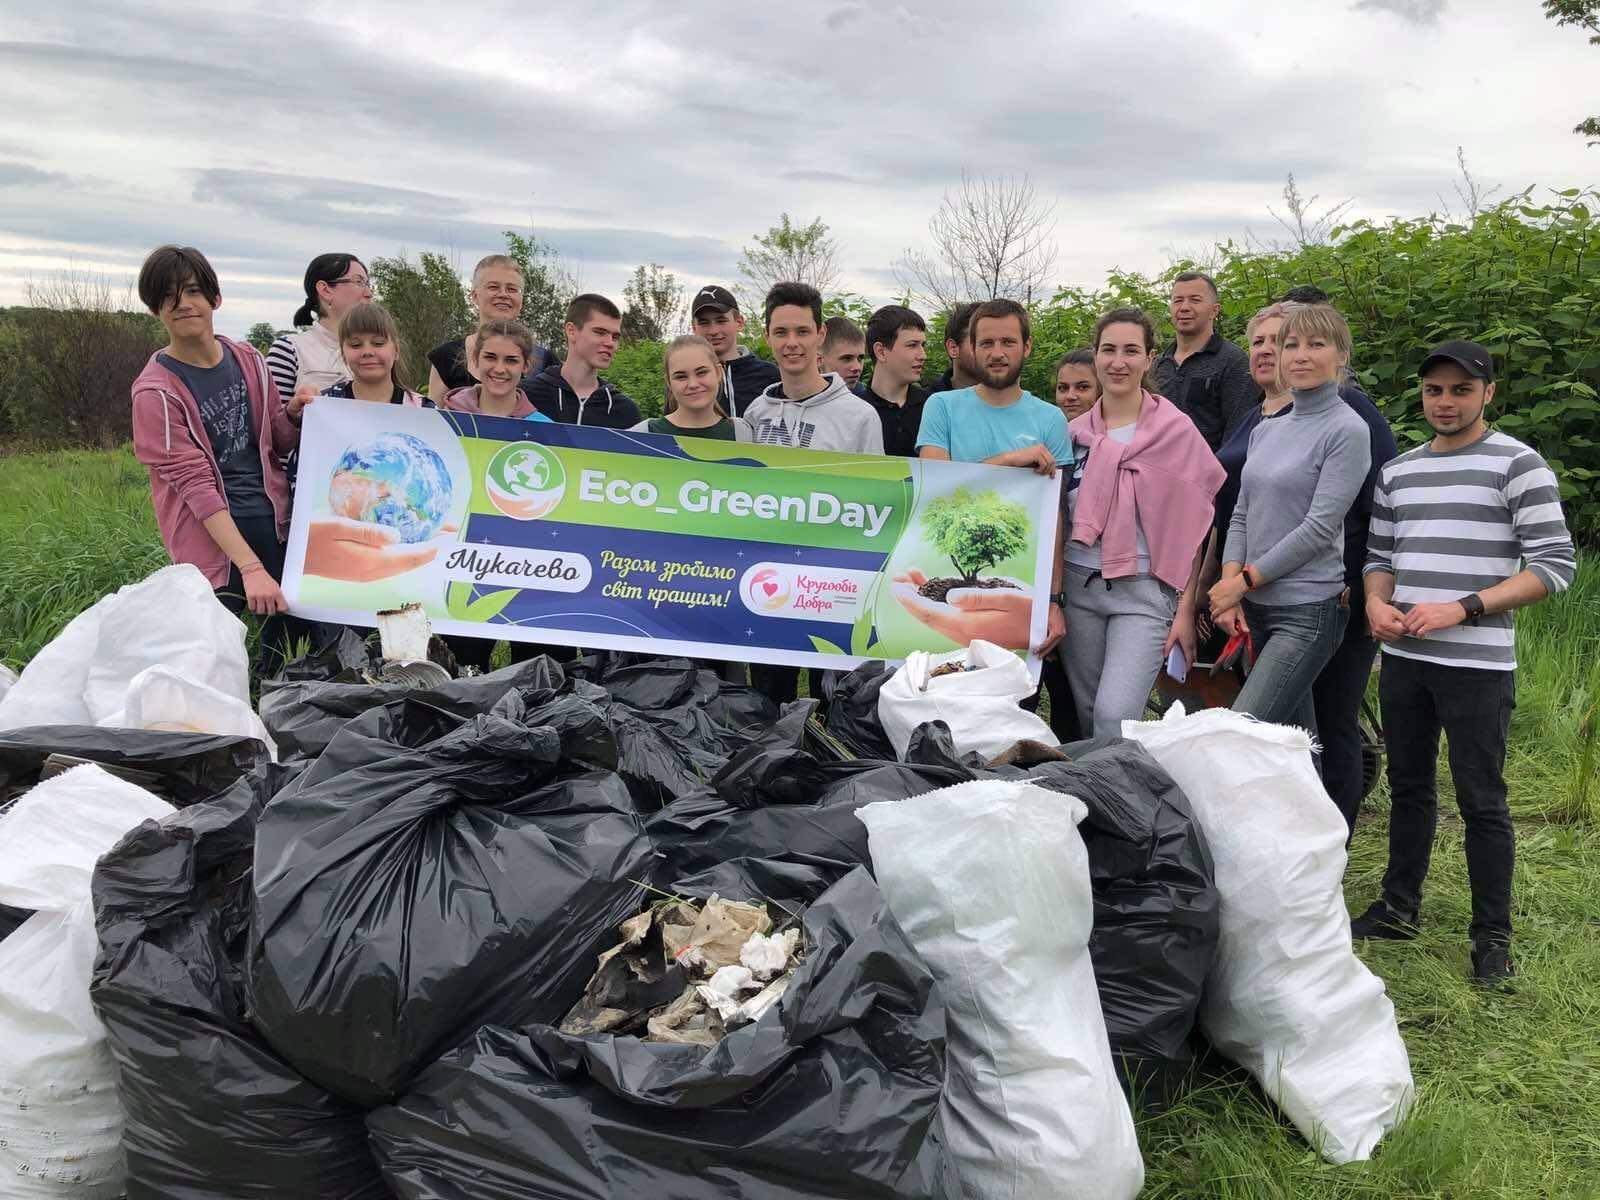 Мукачівці в день міста взяли участь у всеукраїнському проєкті "Eco green Day": вдалося зібрати 20 тонн сміття (ФОТО)